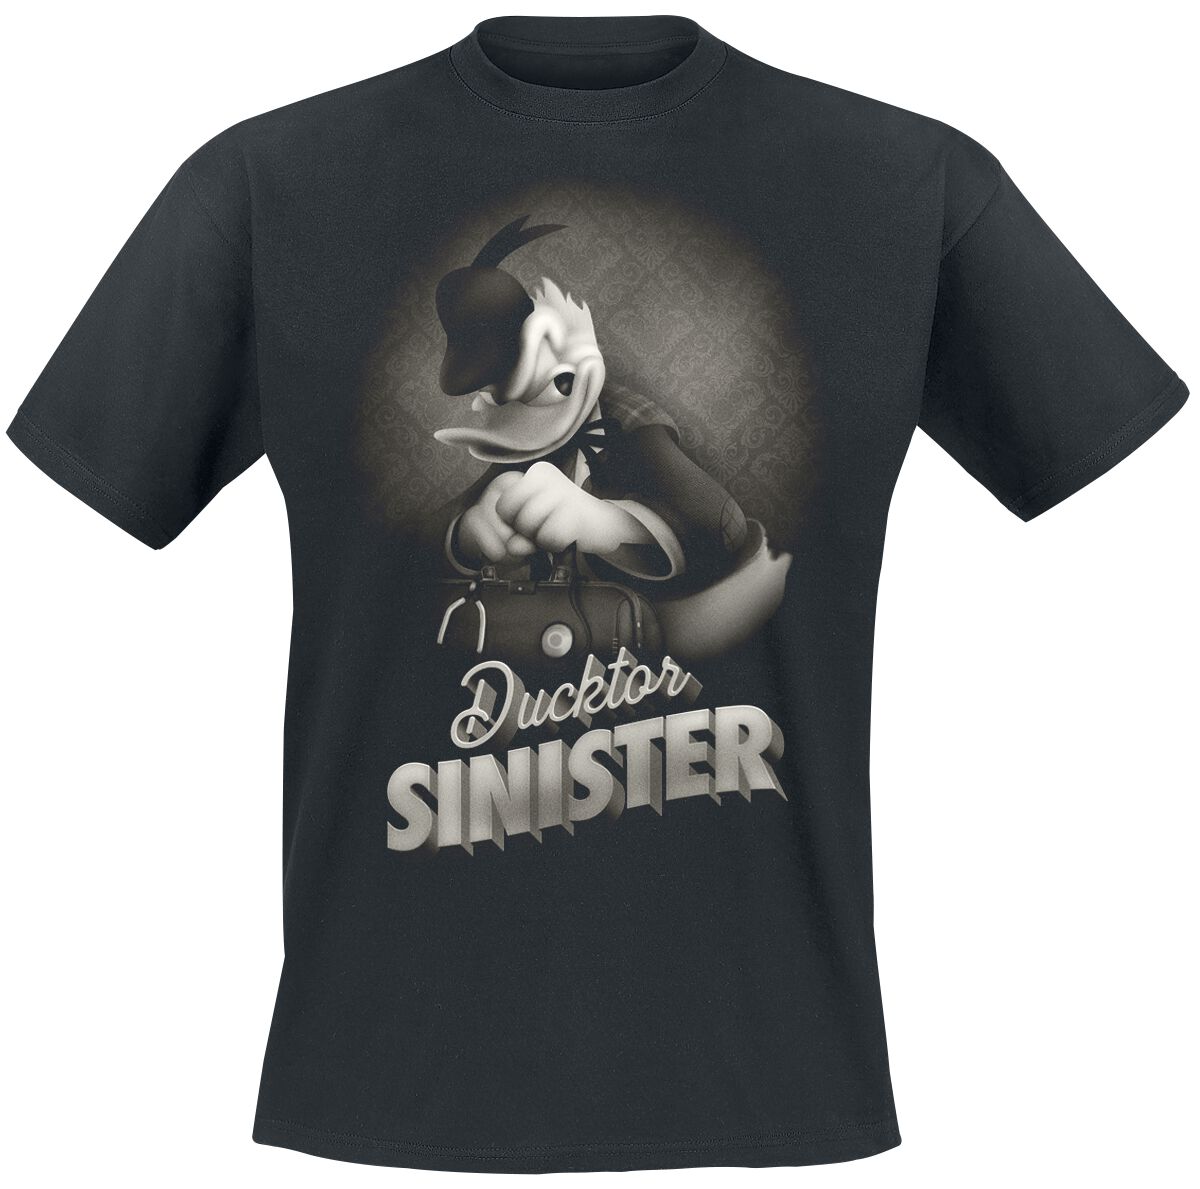 Mickey Mouse - Disney T-Shirt - Donald - Ducktor Sinister - S bis XXL - für Männer - Größe M - schwarz  - EMP exklusives Merchandise!